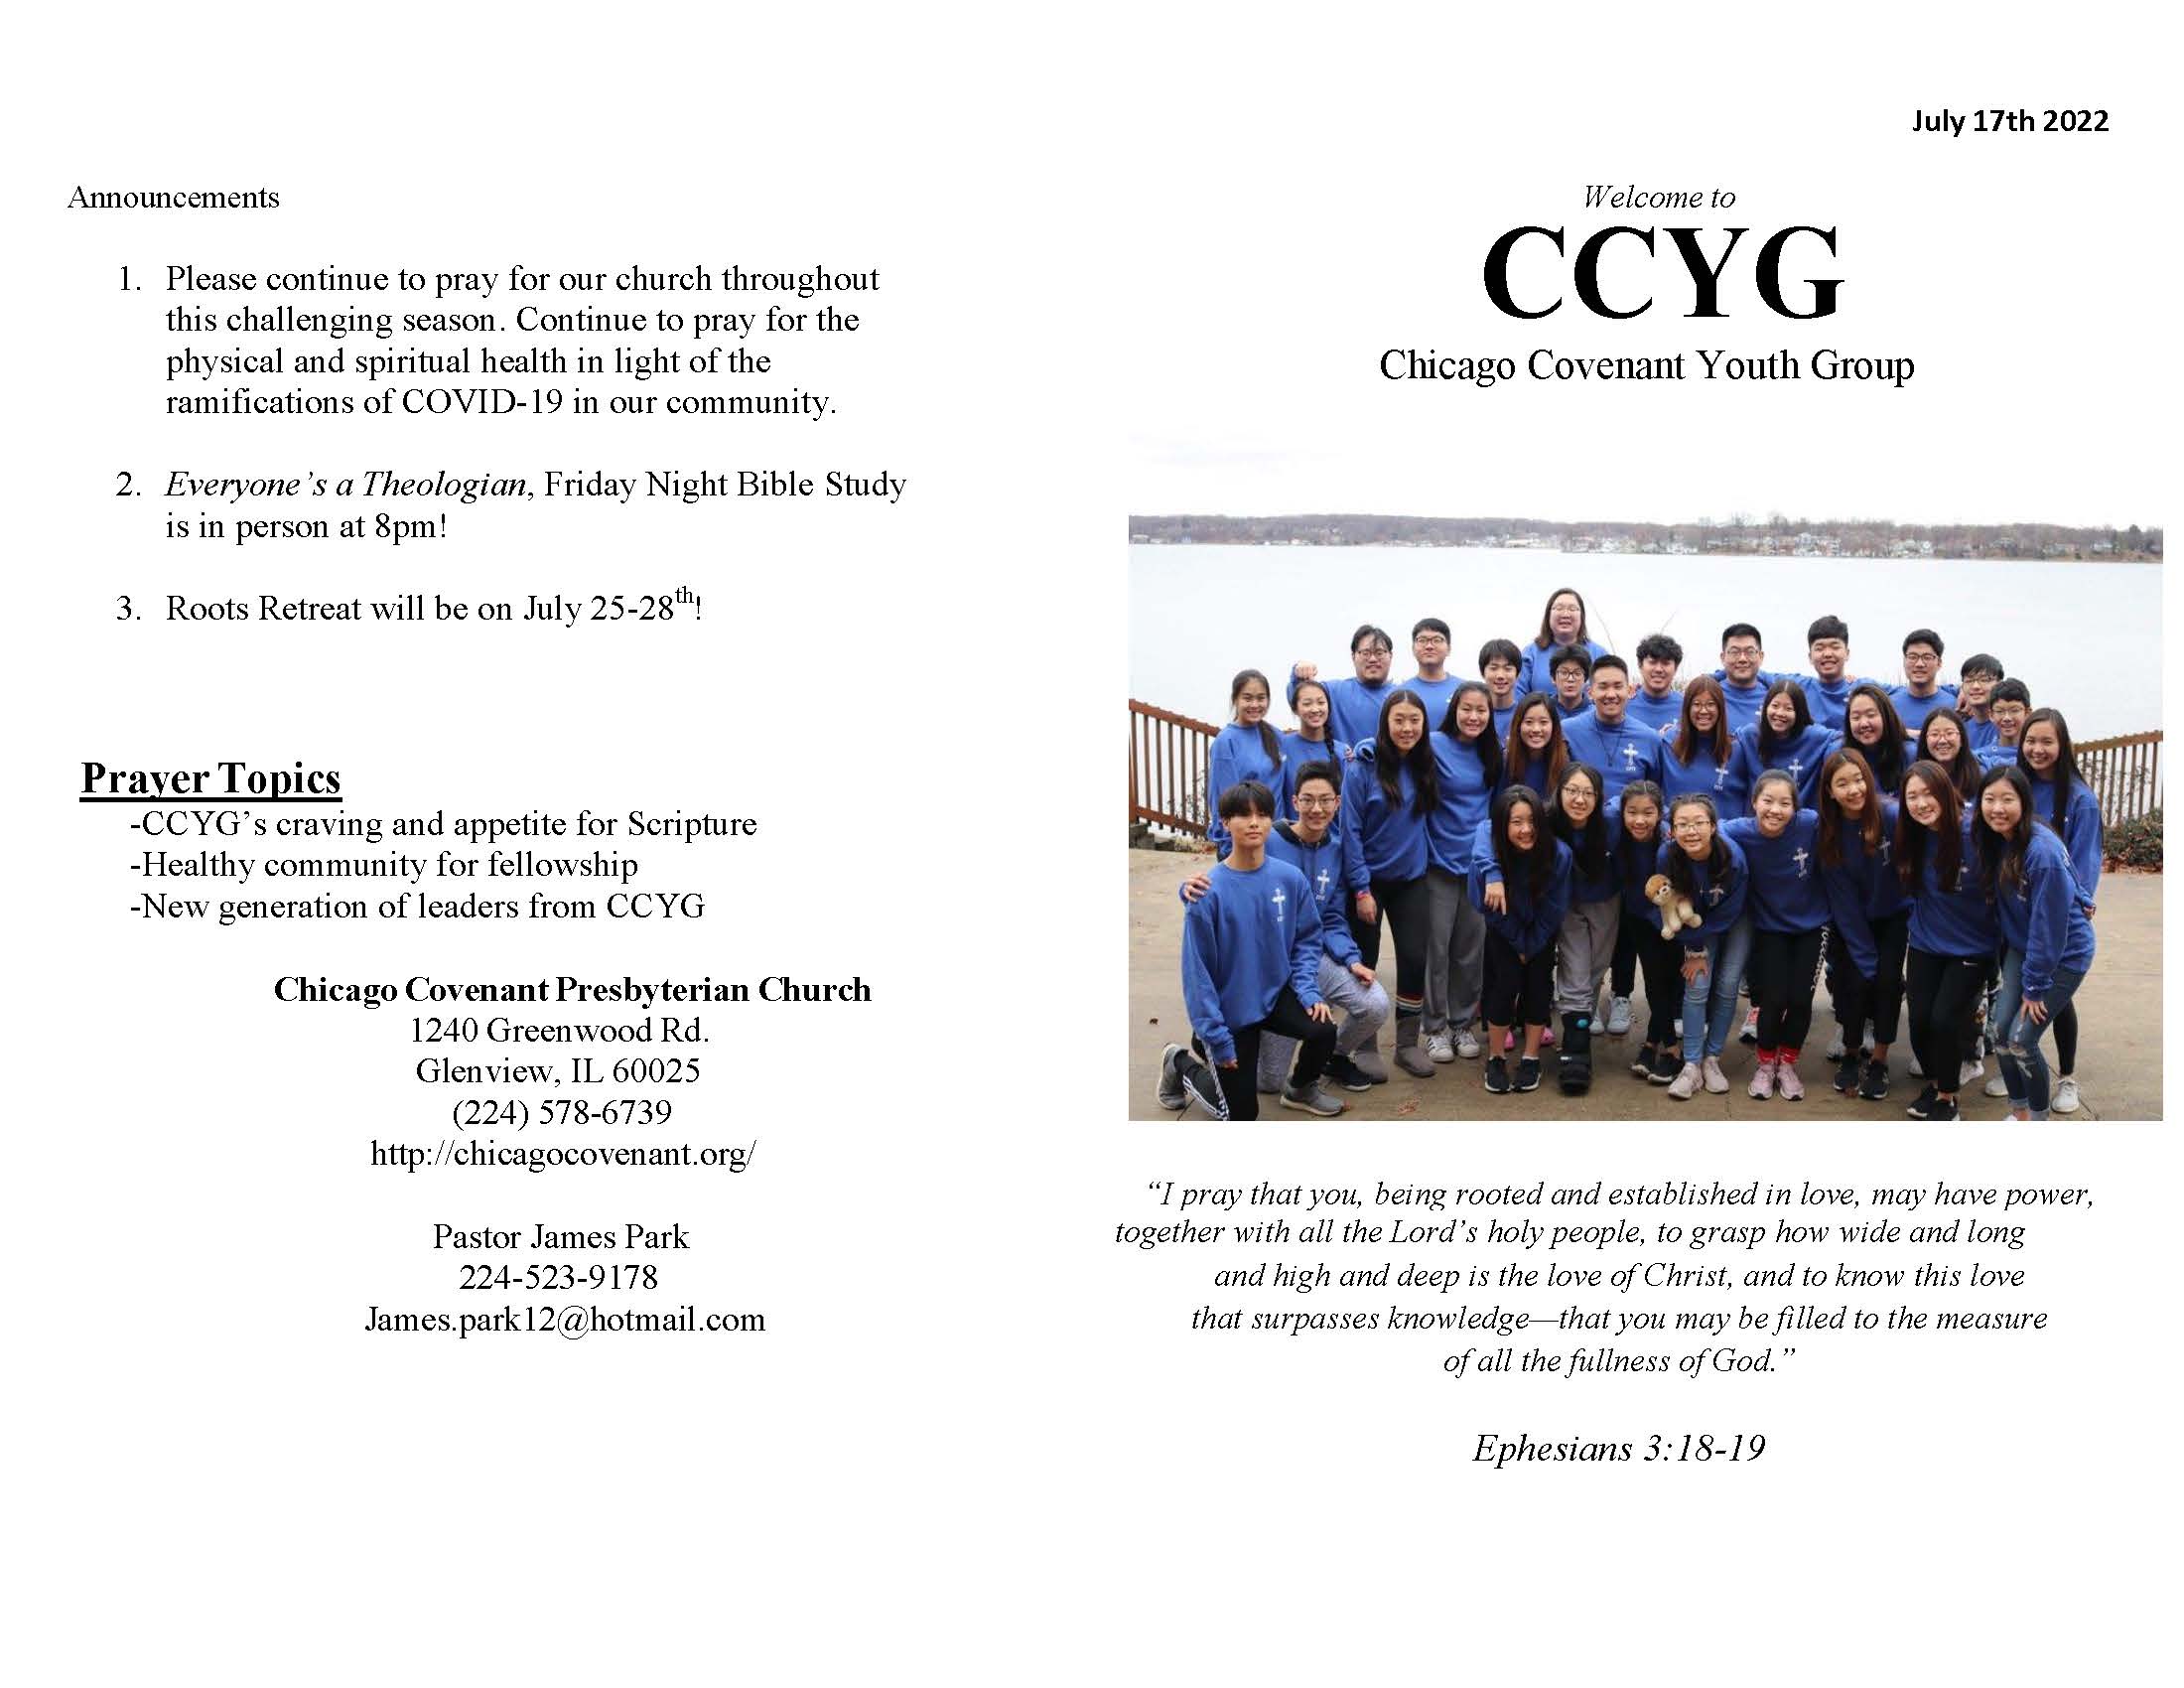 CCYG Bulletin 071722_Page_1.jpg